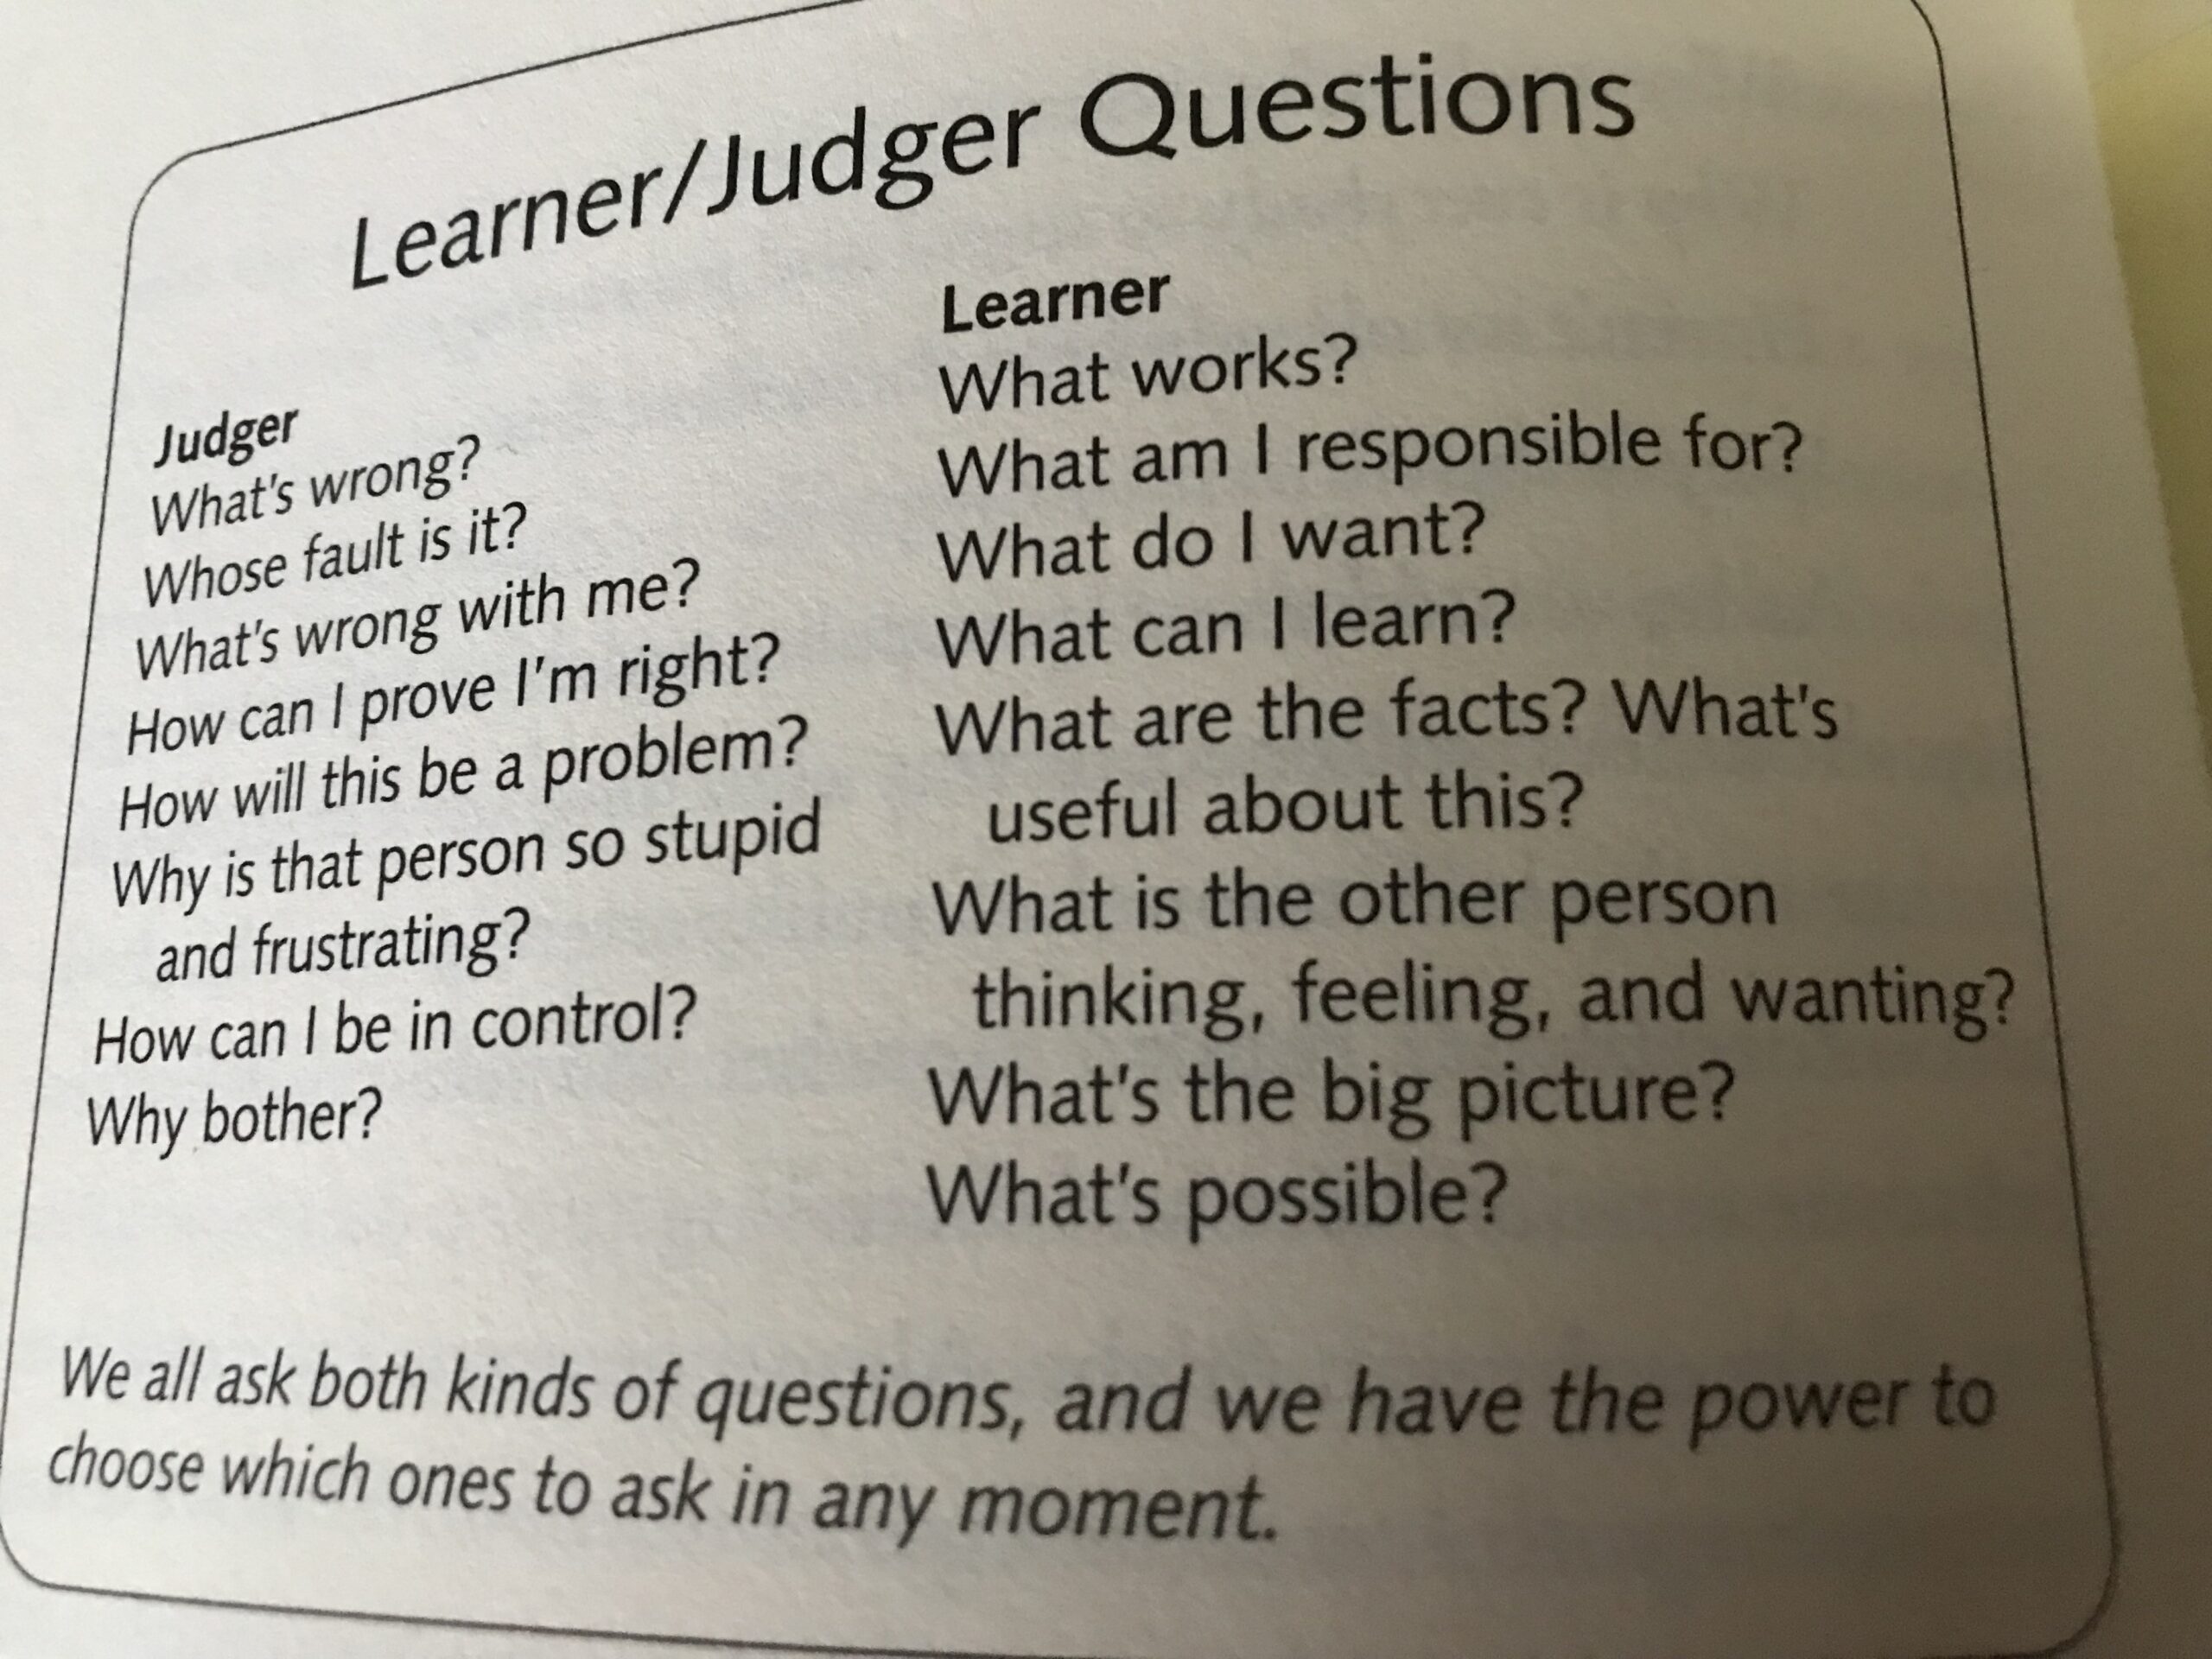 Learner or Judger? Ego or Higher self?